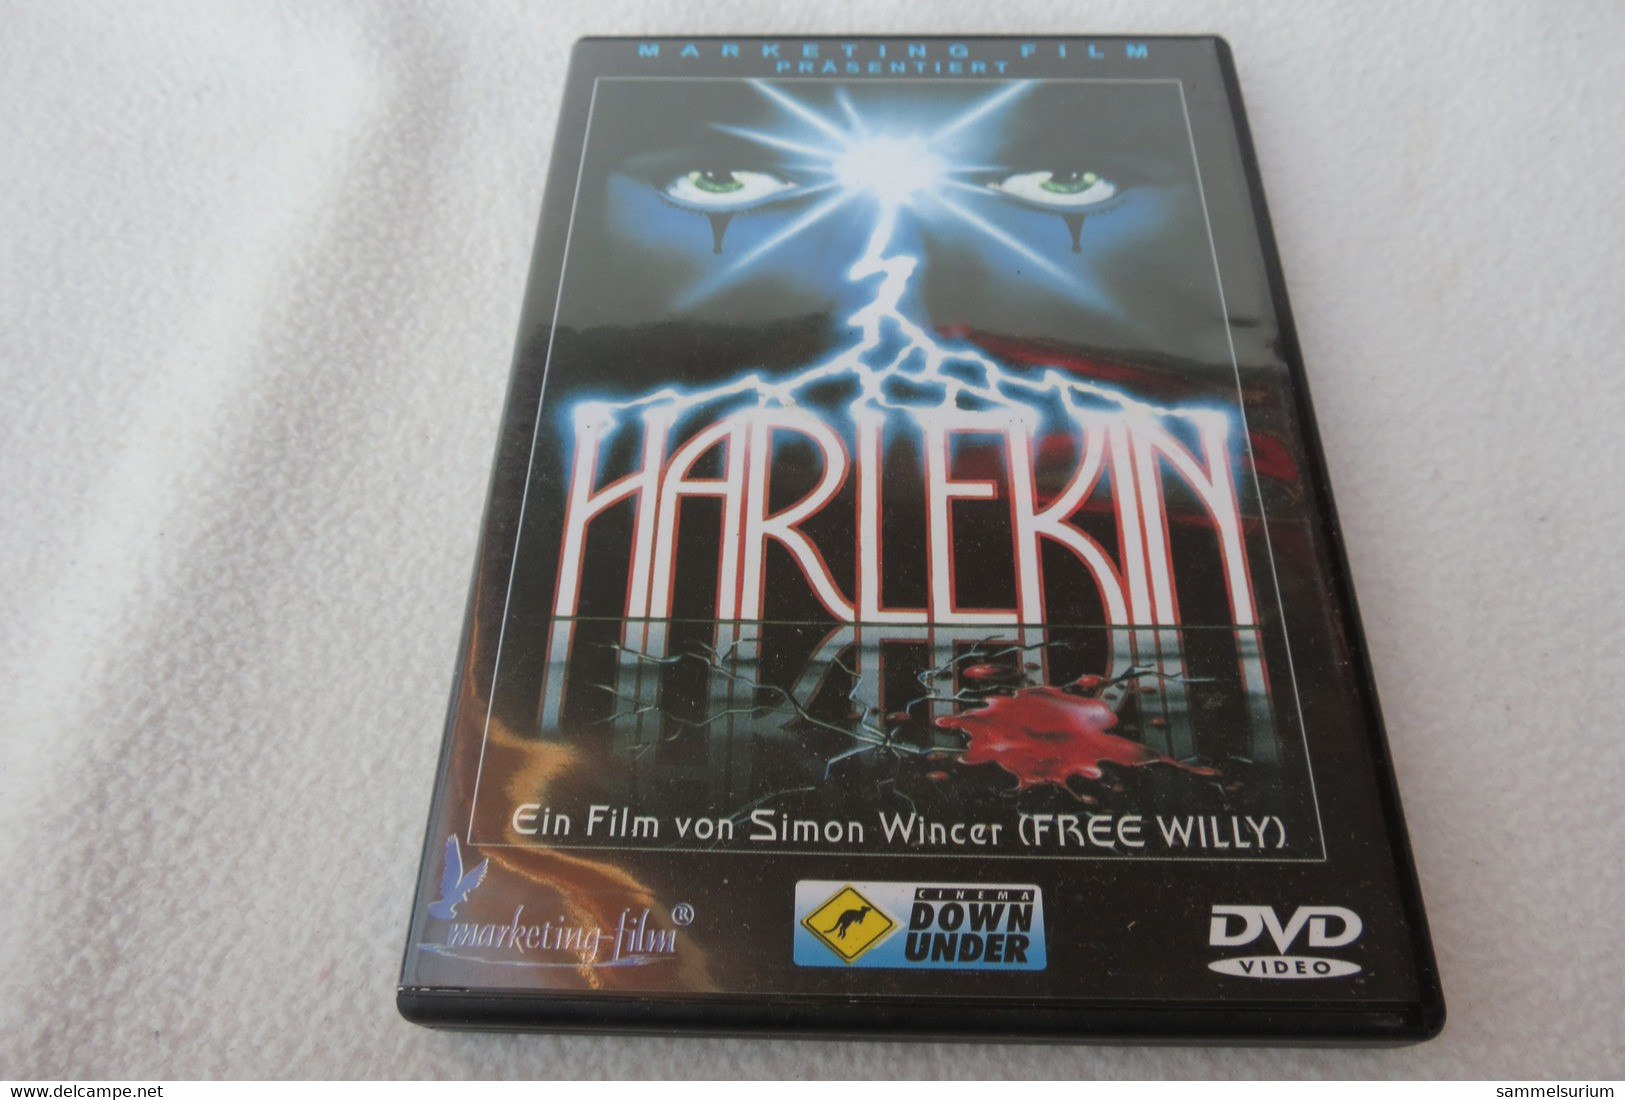 DVD "Harlekin" Thriller - Musik-DVD's